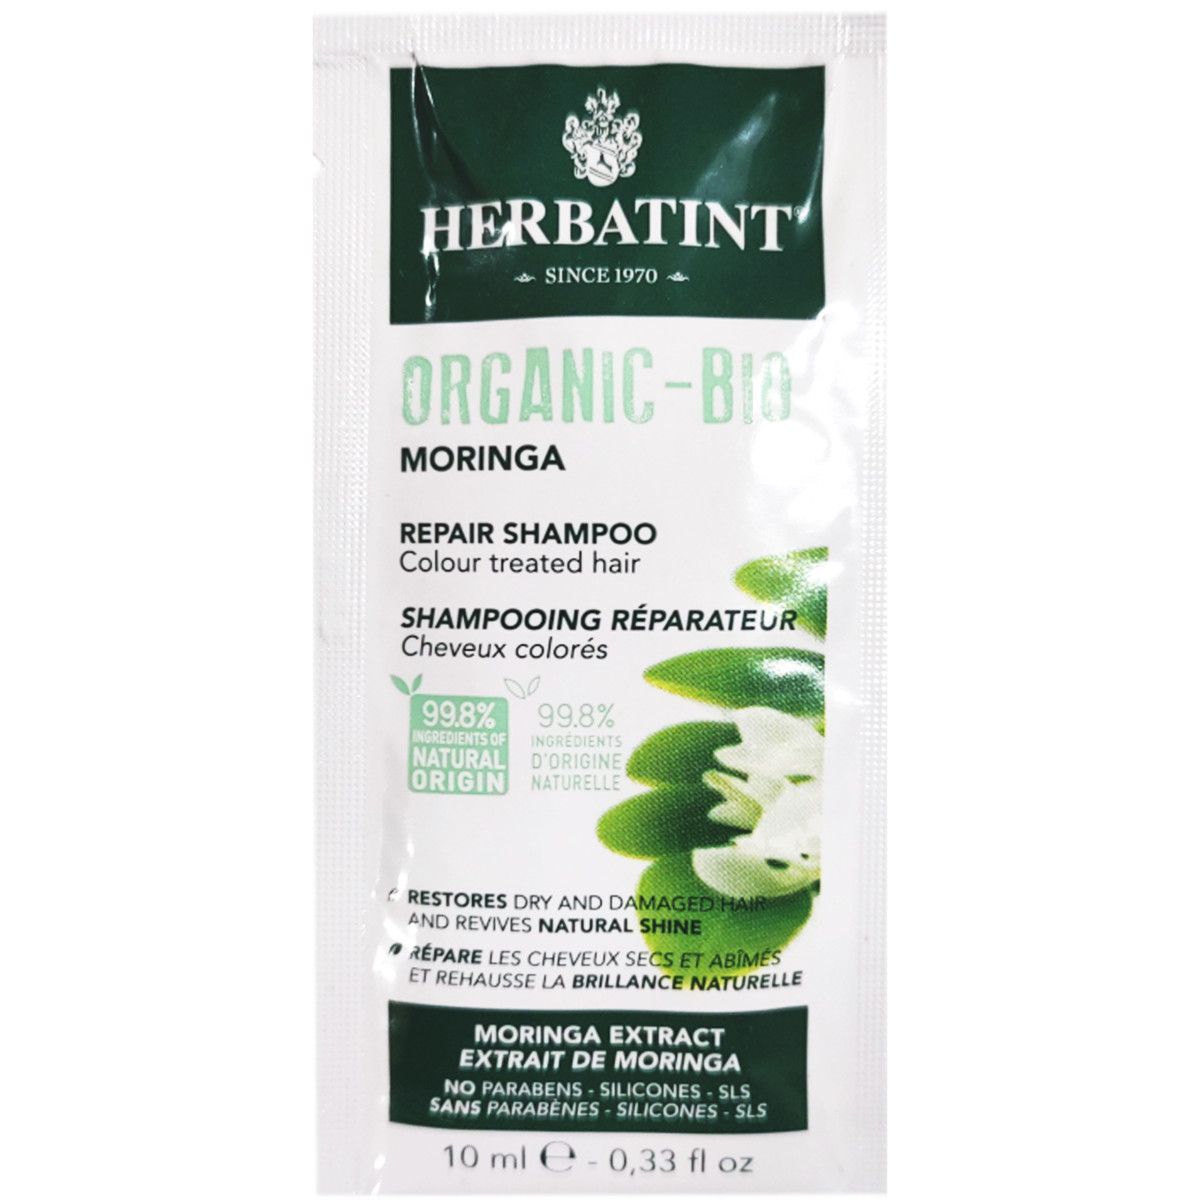 Herbatint Organic Bio Moringa delikatny szampon naprawczy do włosów 10ml